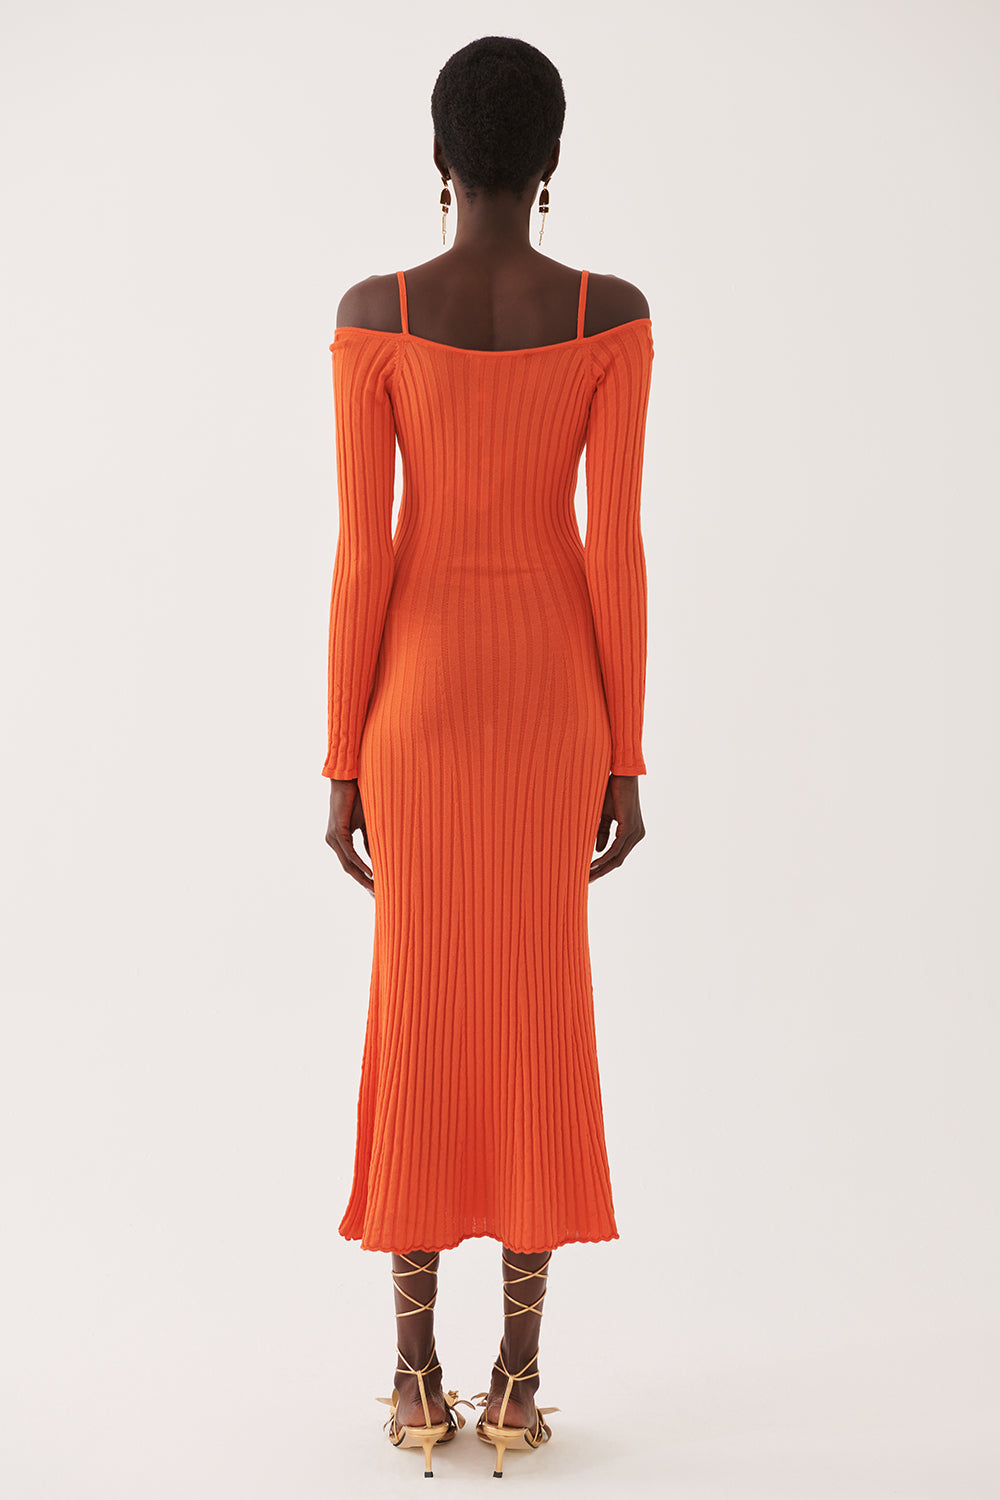 Периас џемпер фустан портокал 0121